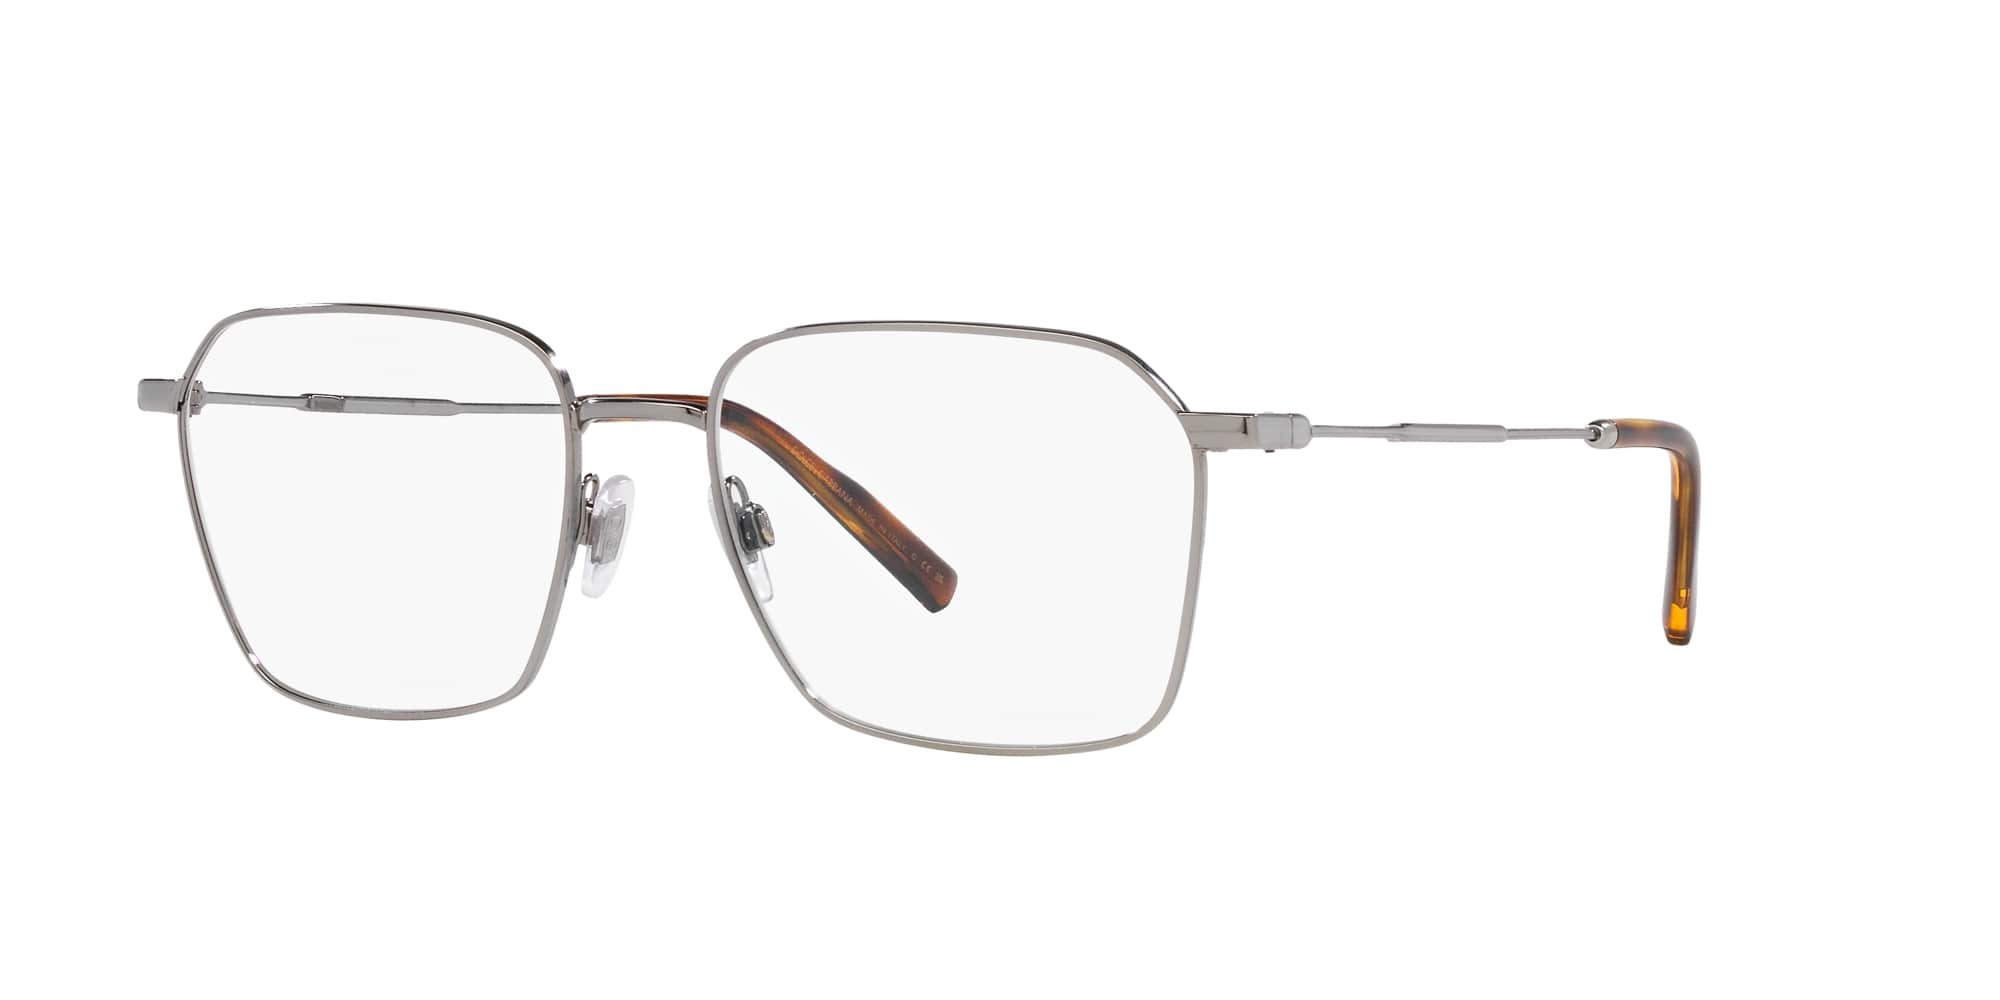 Das Bild zeigt die Korrektionsbrille DG1350 04 von der Marke D&G in silber.